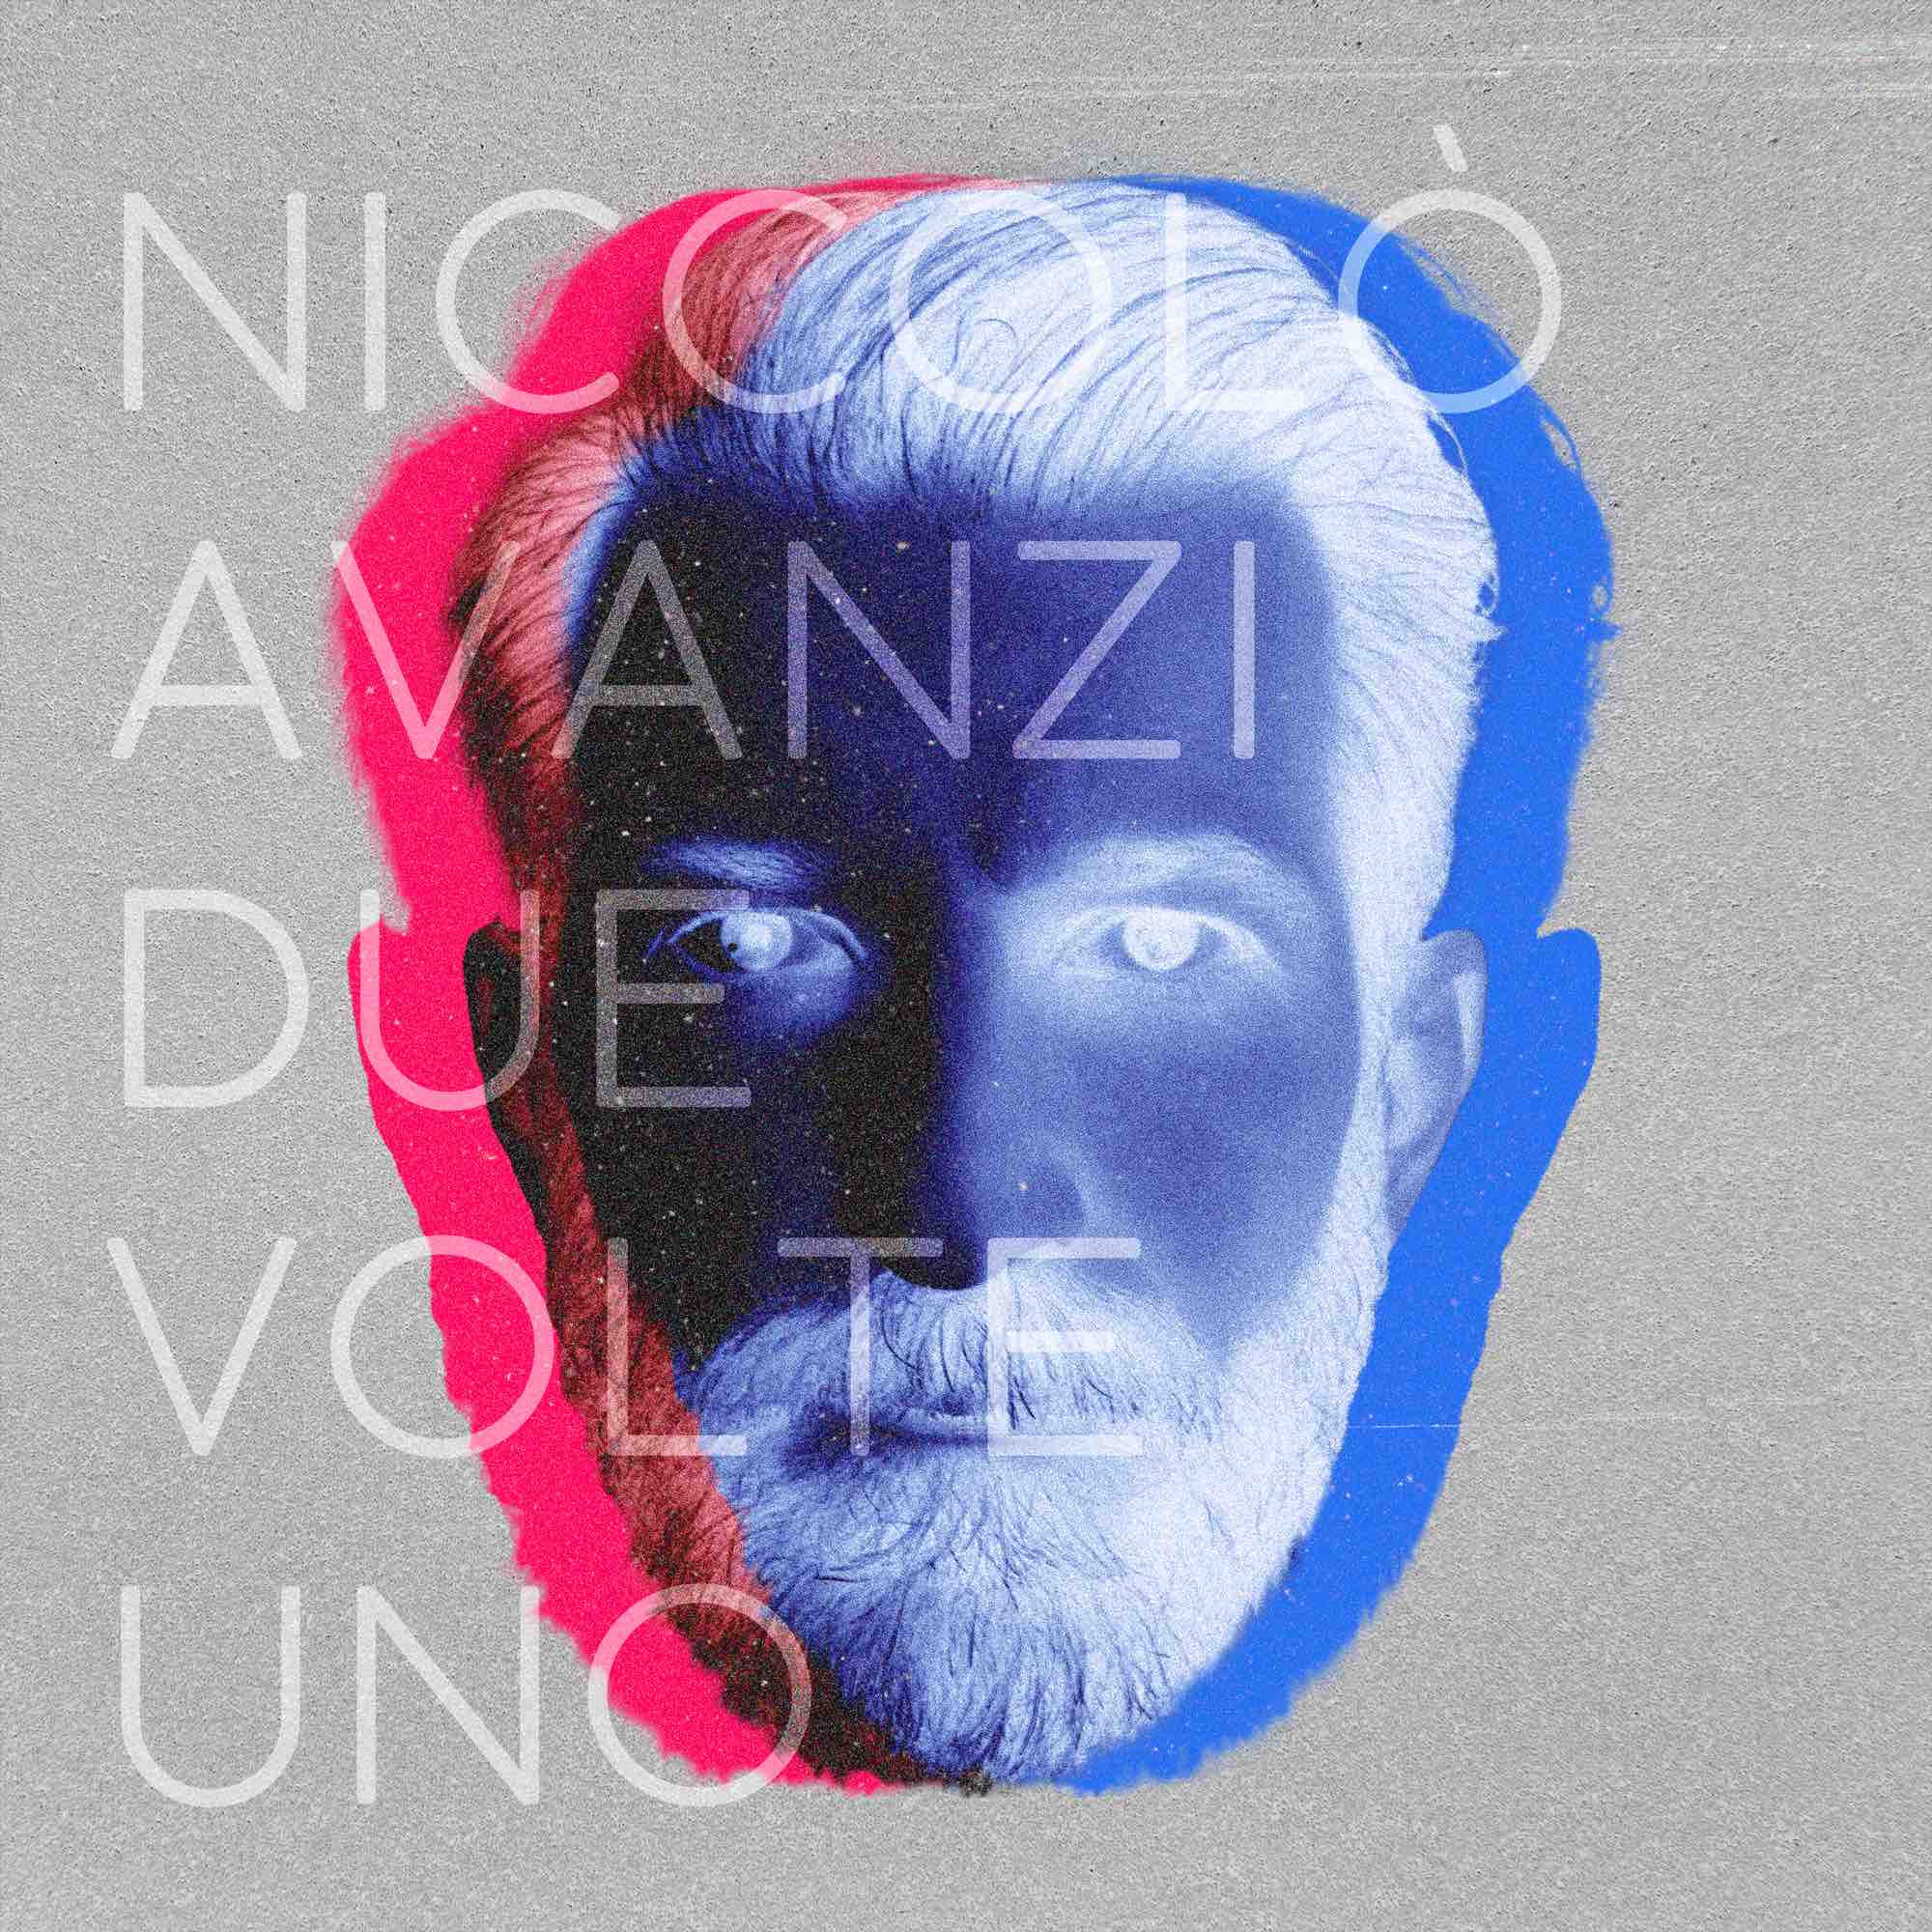 Niccolò Avanzi: Da venerdì 1° marzo in digitale “Due Volte Uno”, l’album d’esordio del cantautore gardesano